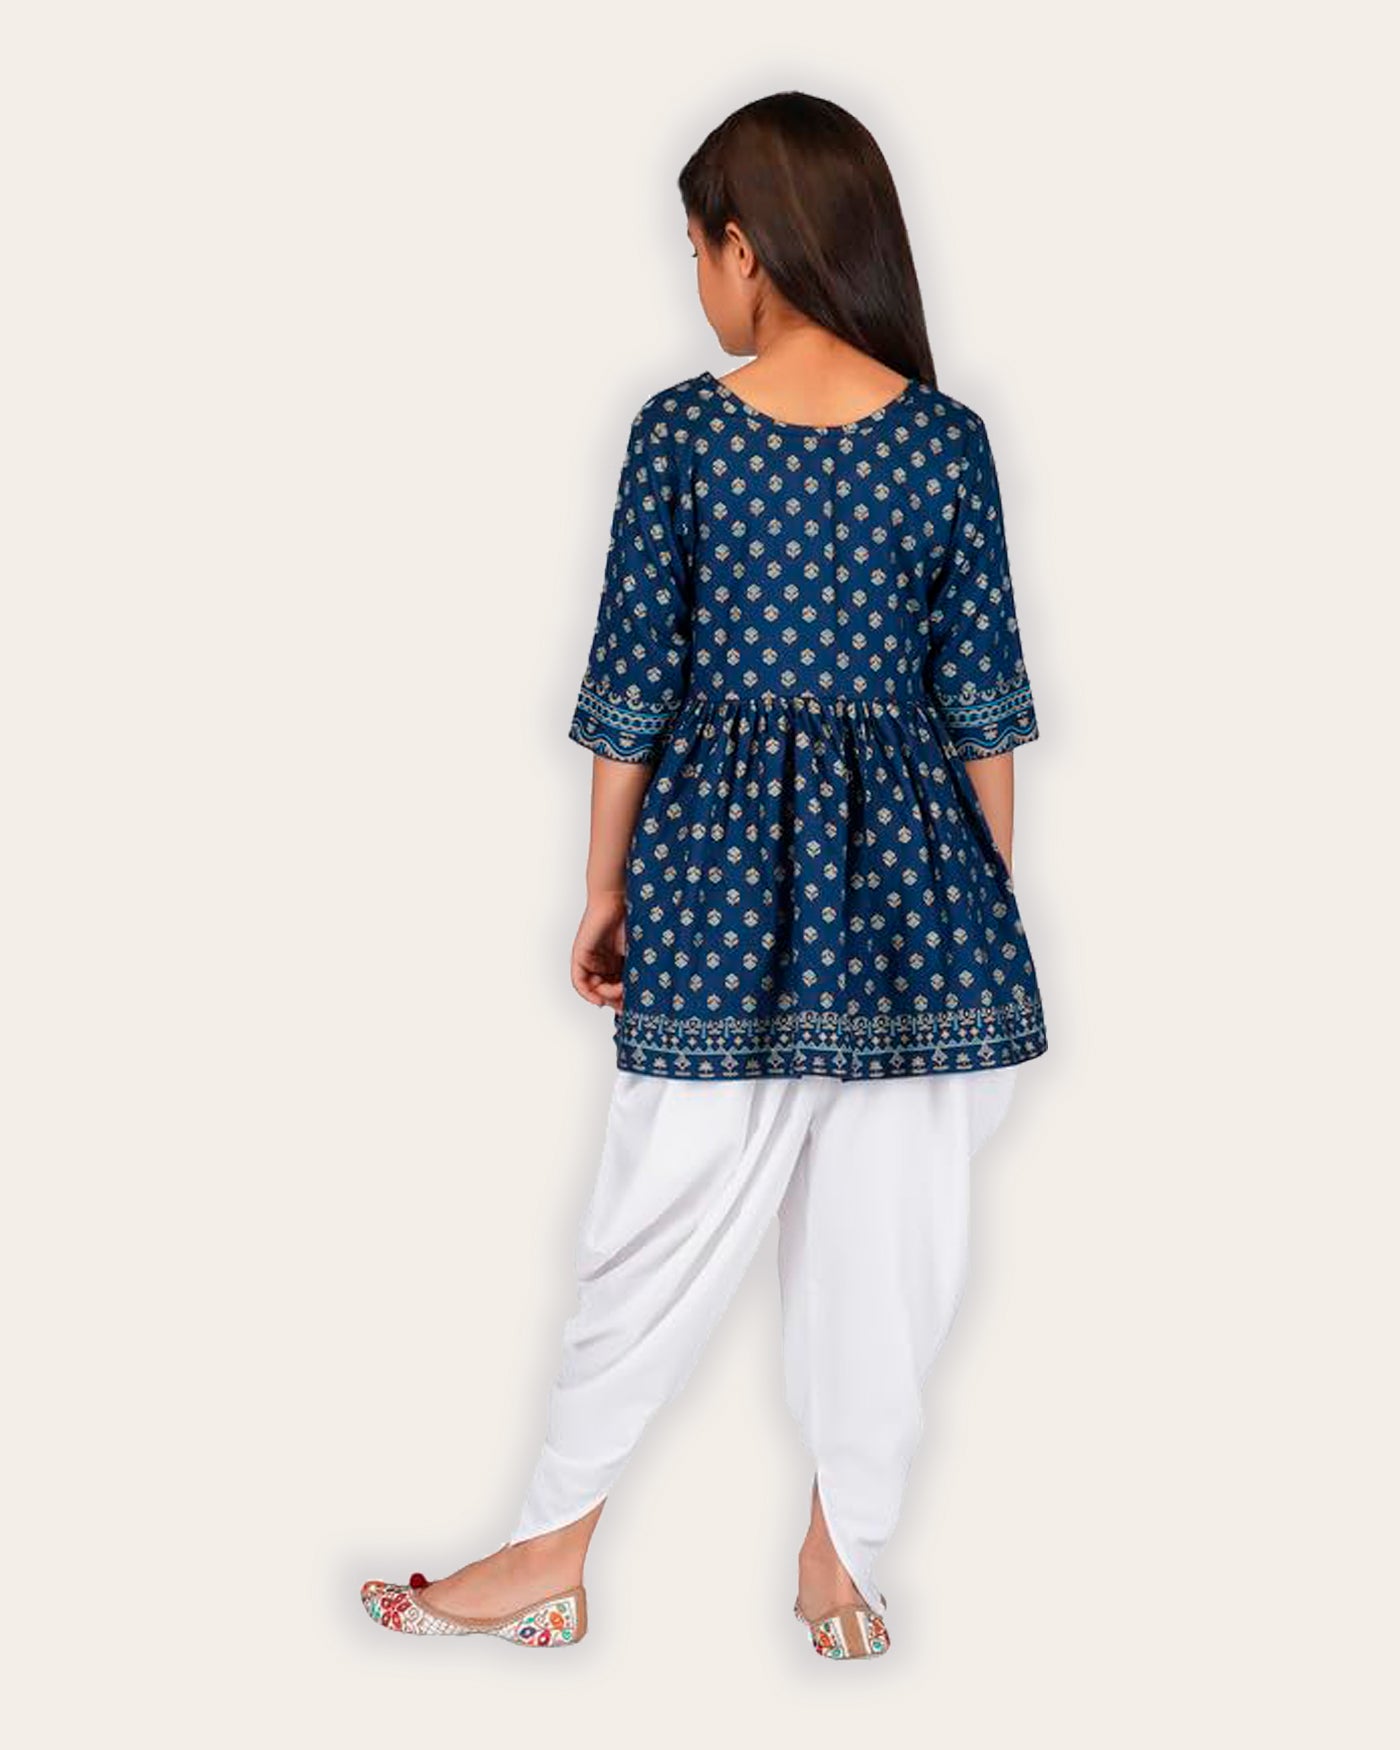 Kaaludii Dhoti Kurta Set for Girls Rayon Printed Round Neck Ethnic Wear for Kids Girls Salwar Suit and Dhoti Pant Set